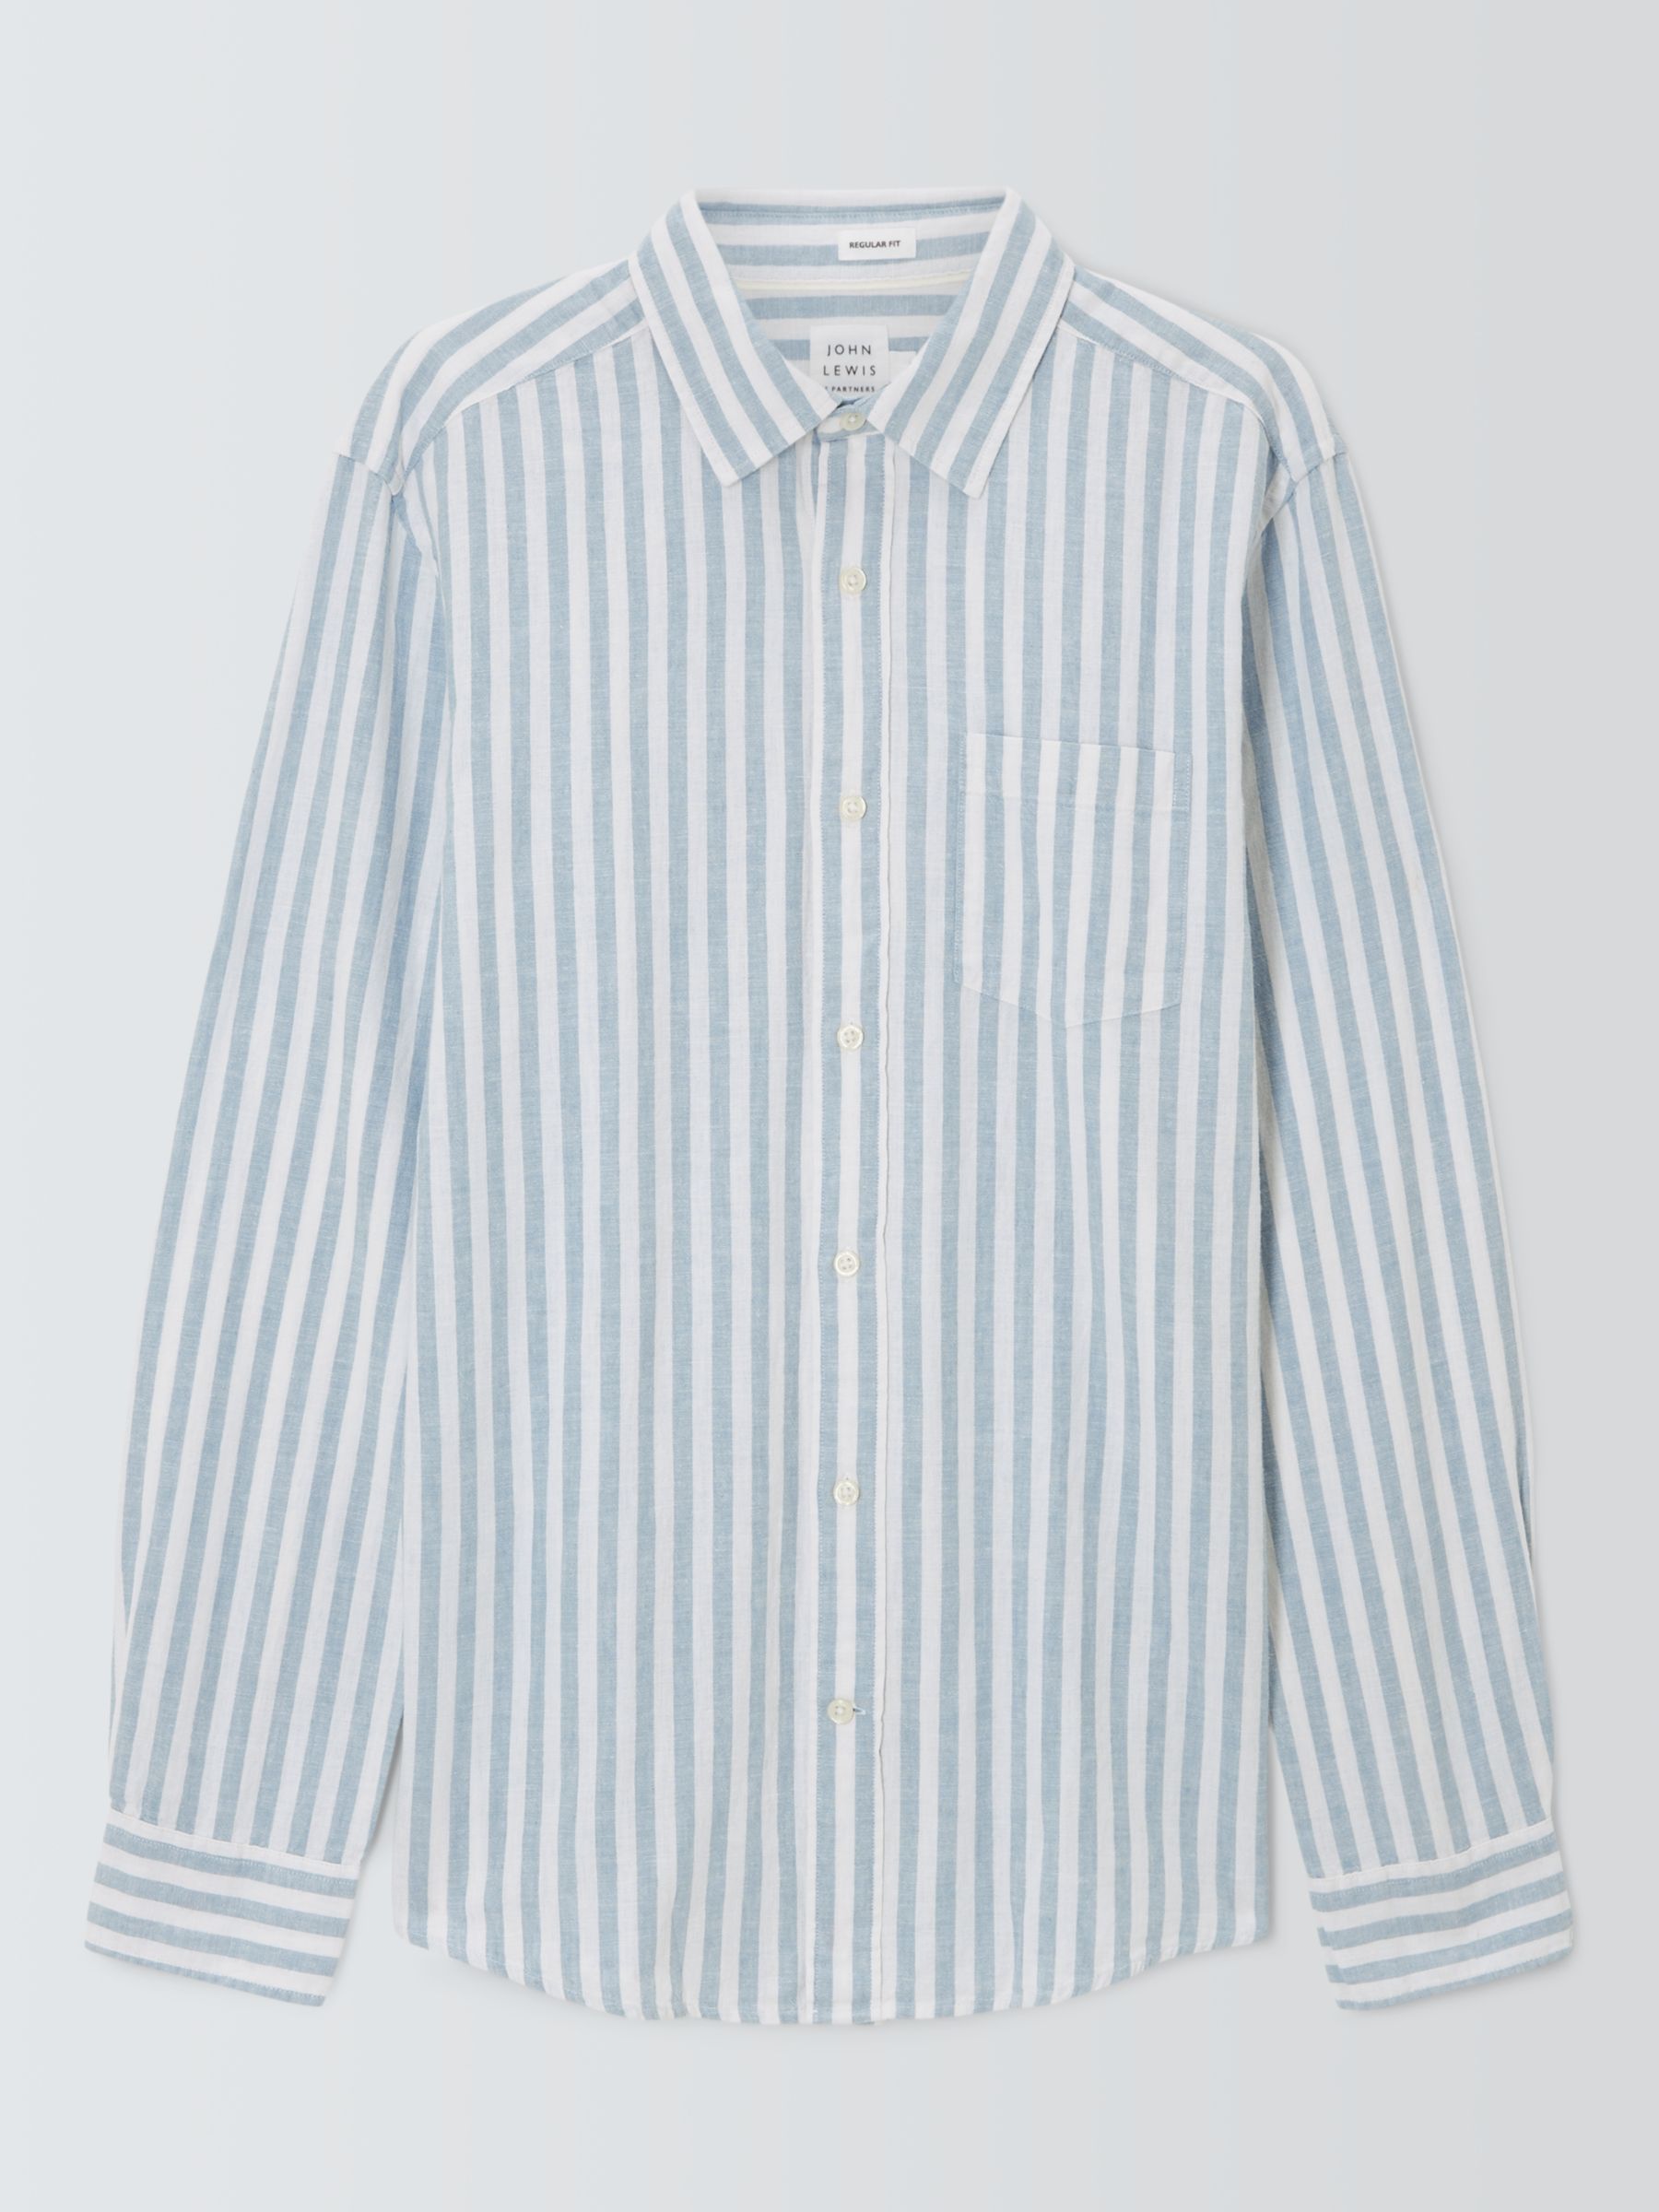 John Lewis Linen Blend Stripe Long Sleeve Shirt, Blue, S